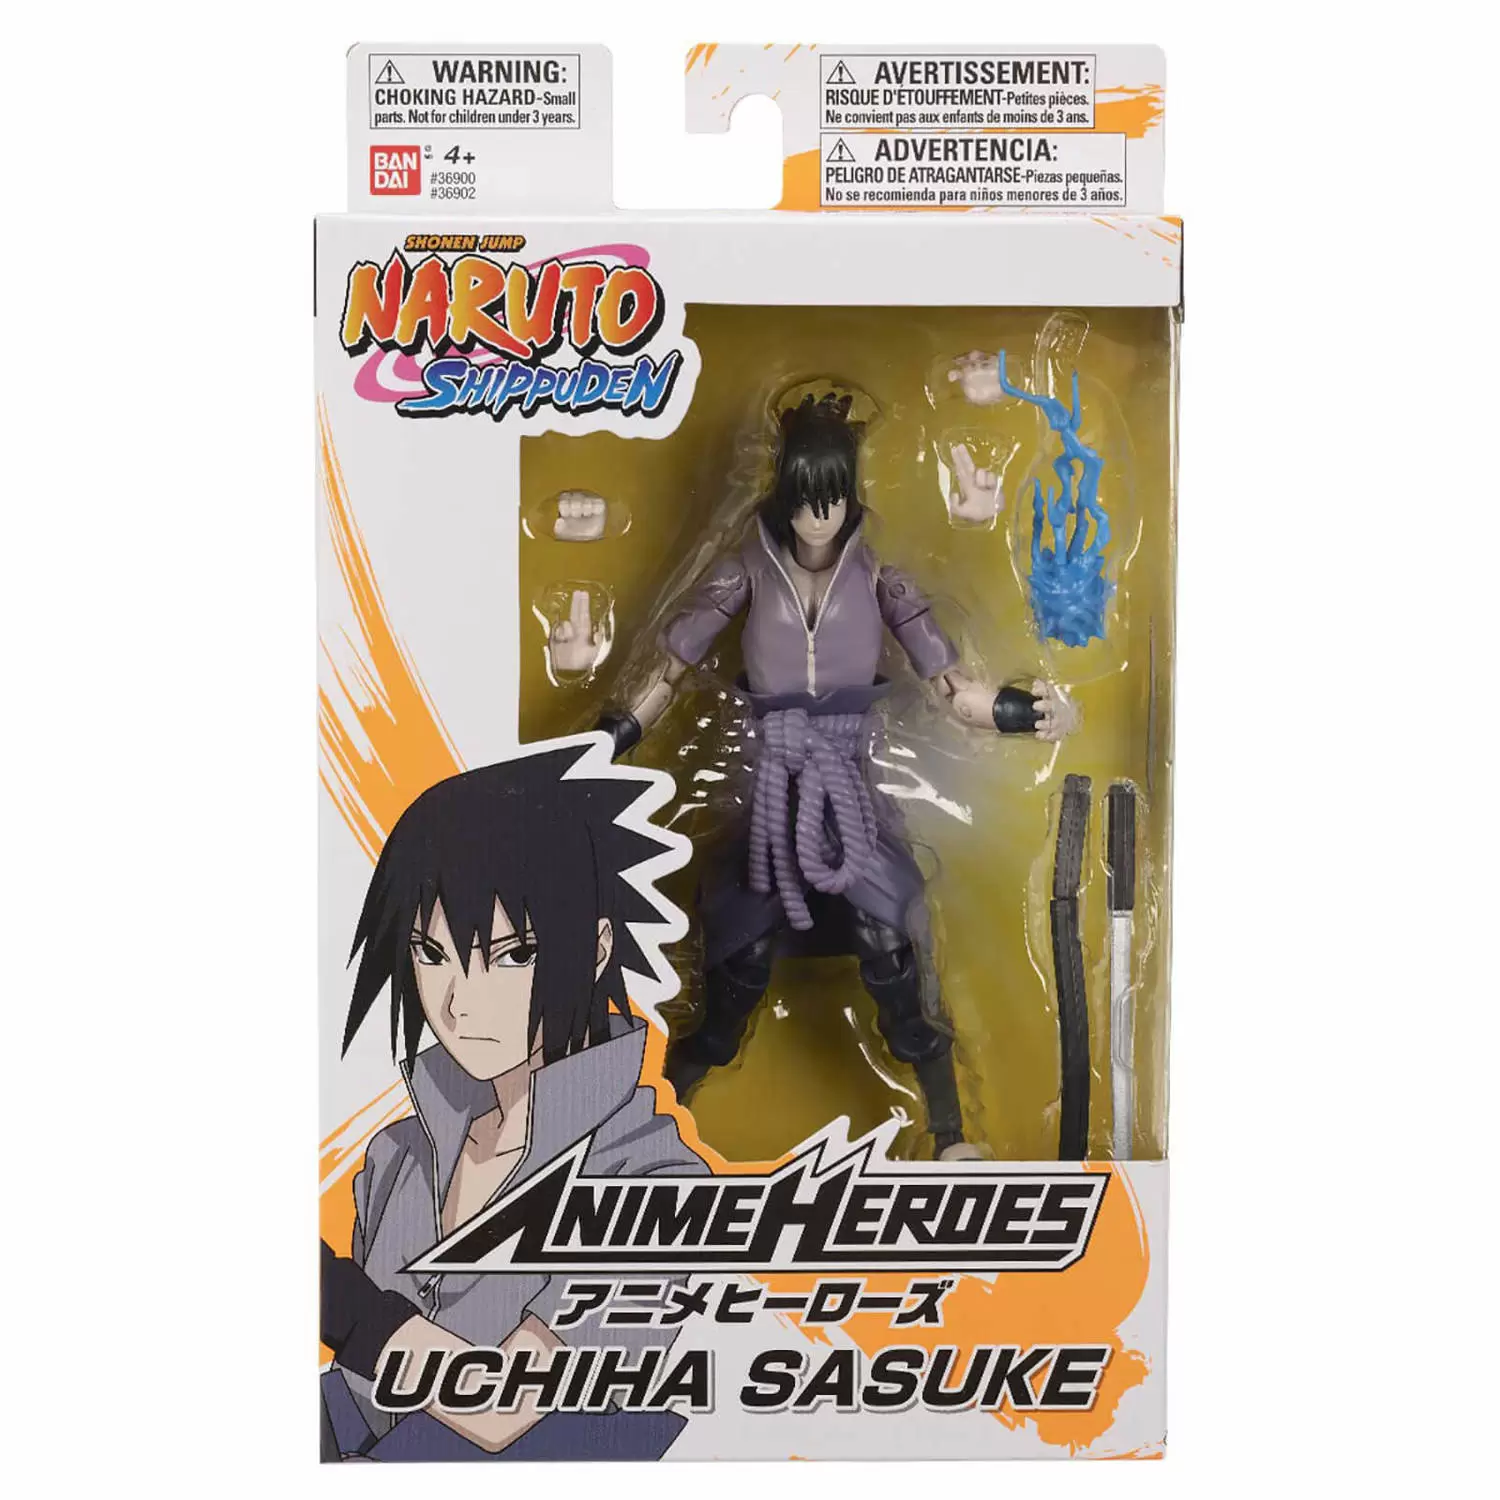 Uchiha, Sasuke uchiha, Naruto shippuden anime